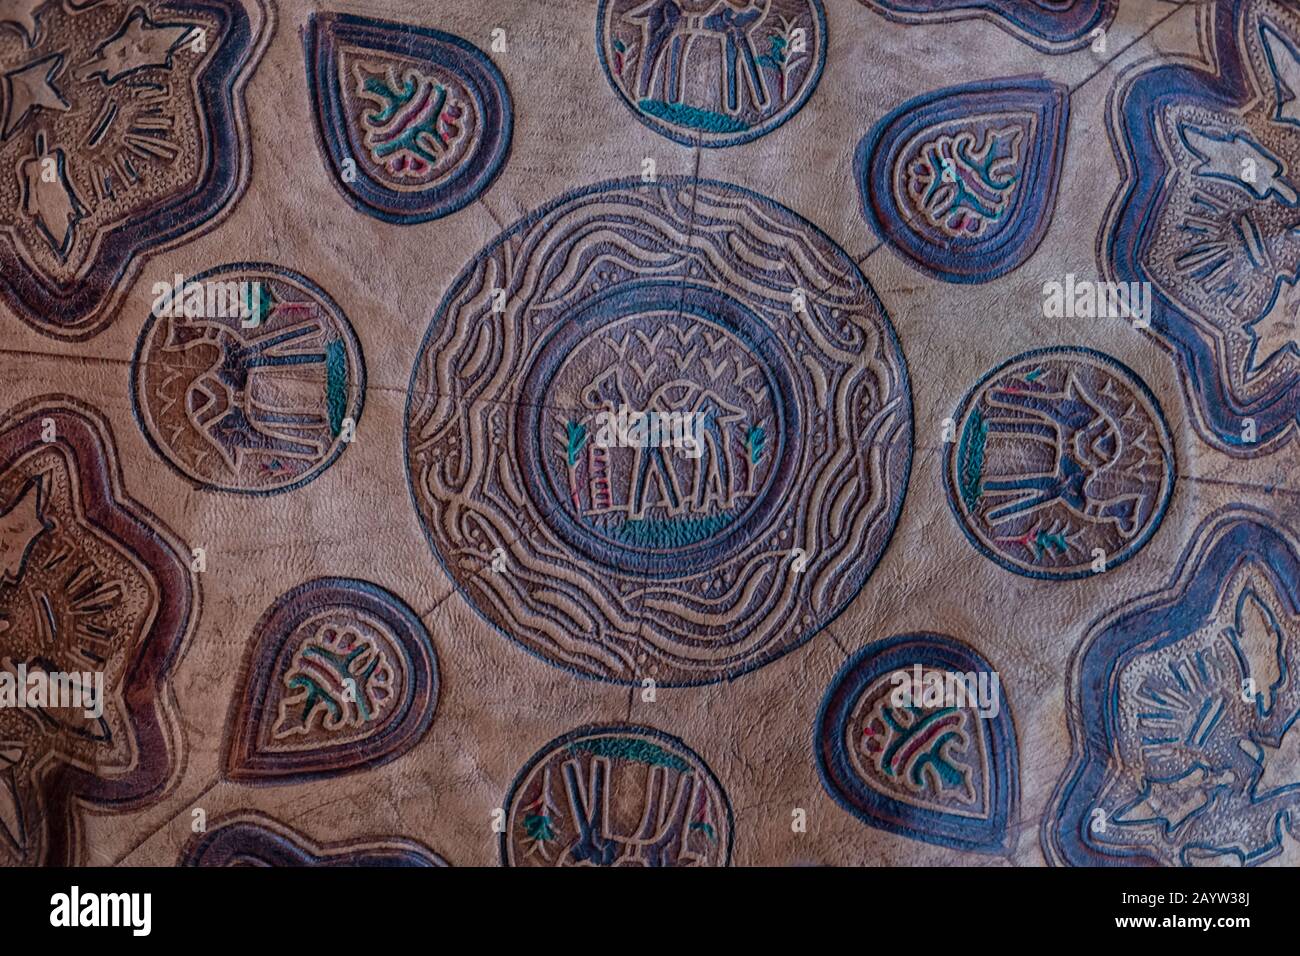 Tradizionale pouf in pelle marocchina. Primitivo Berber disegno del deserto, dromedario (cammello) e palma dattero. Foto Stock